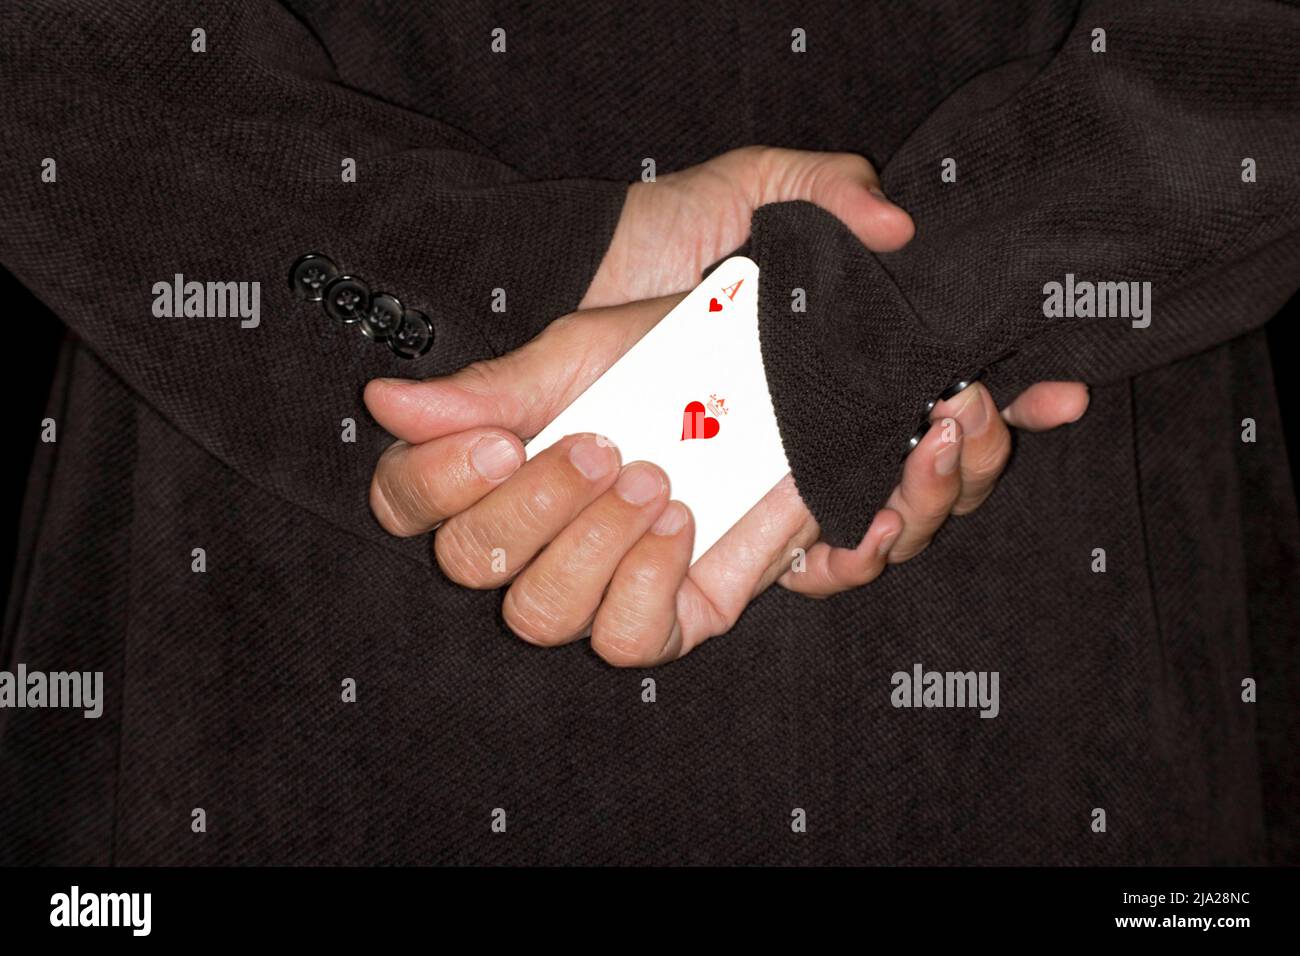 Spielkarte, Betrug, Symbol-Betrug, Symbol-Bild für ein weiteres Herz-Ass auf dem Ärmel Stockfoto